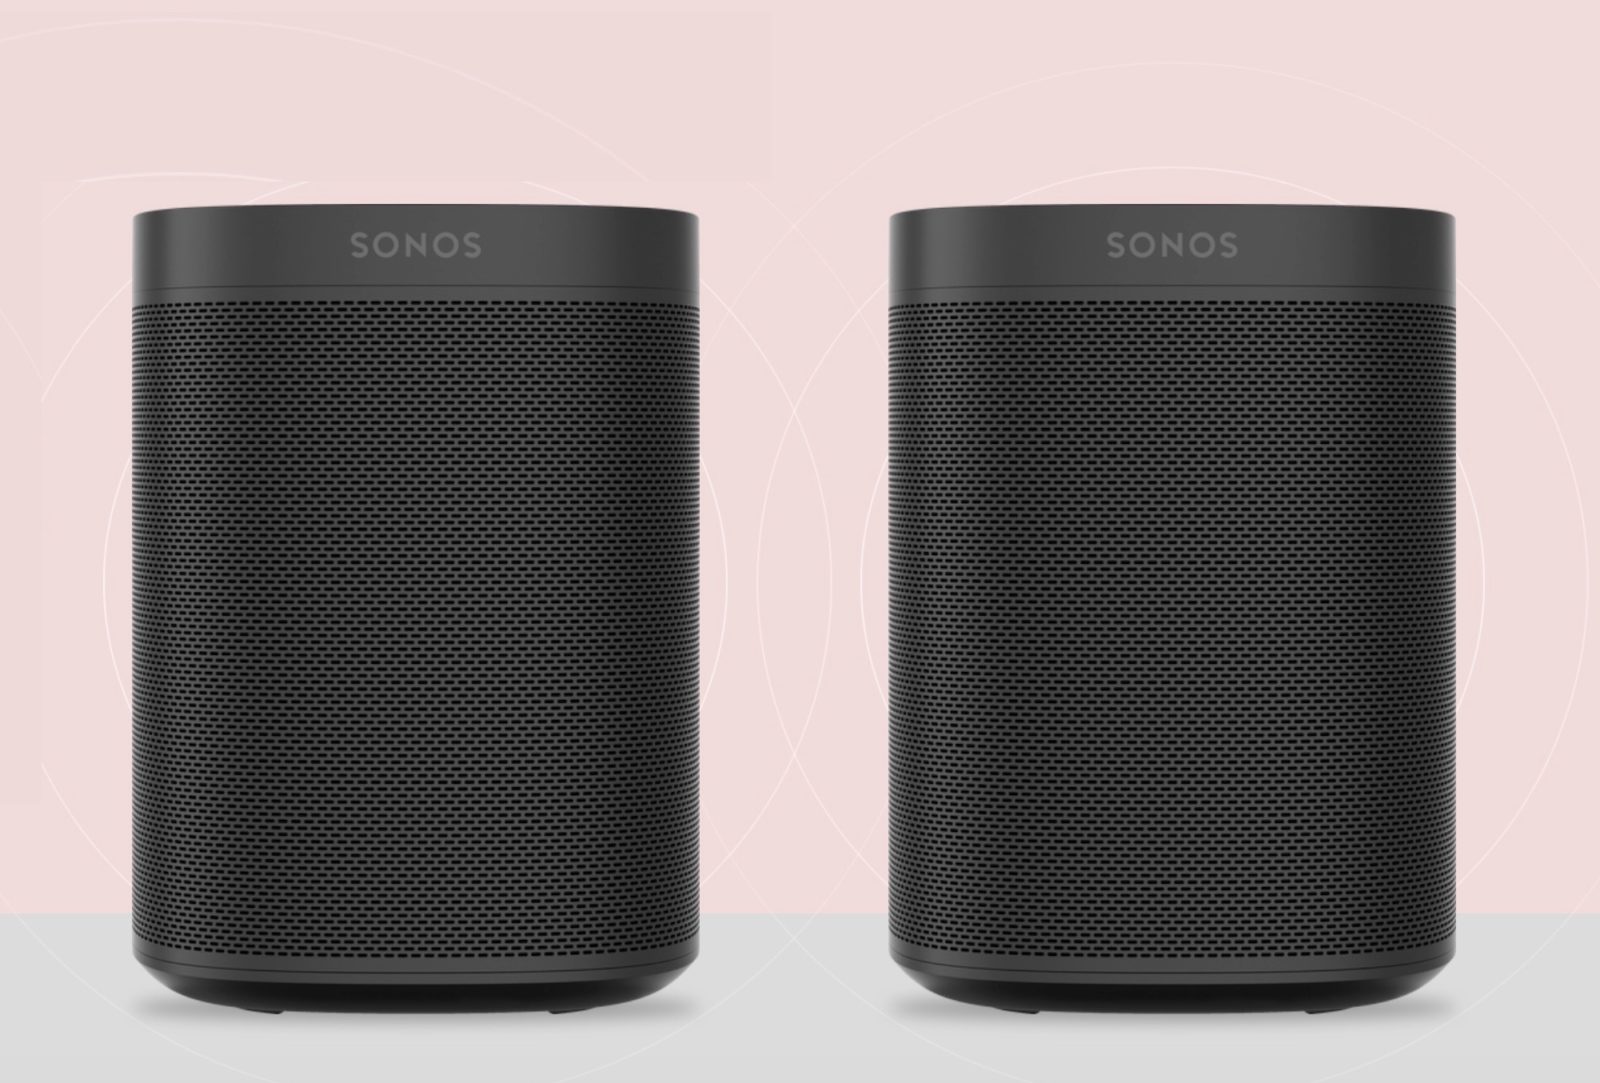 Arriva Sonos One SL, togliete il microfono a Sonos One e risparmiate con il wireless multi stanza